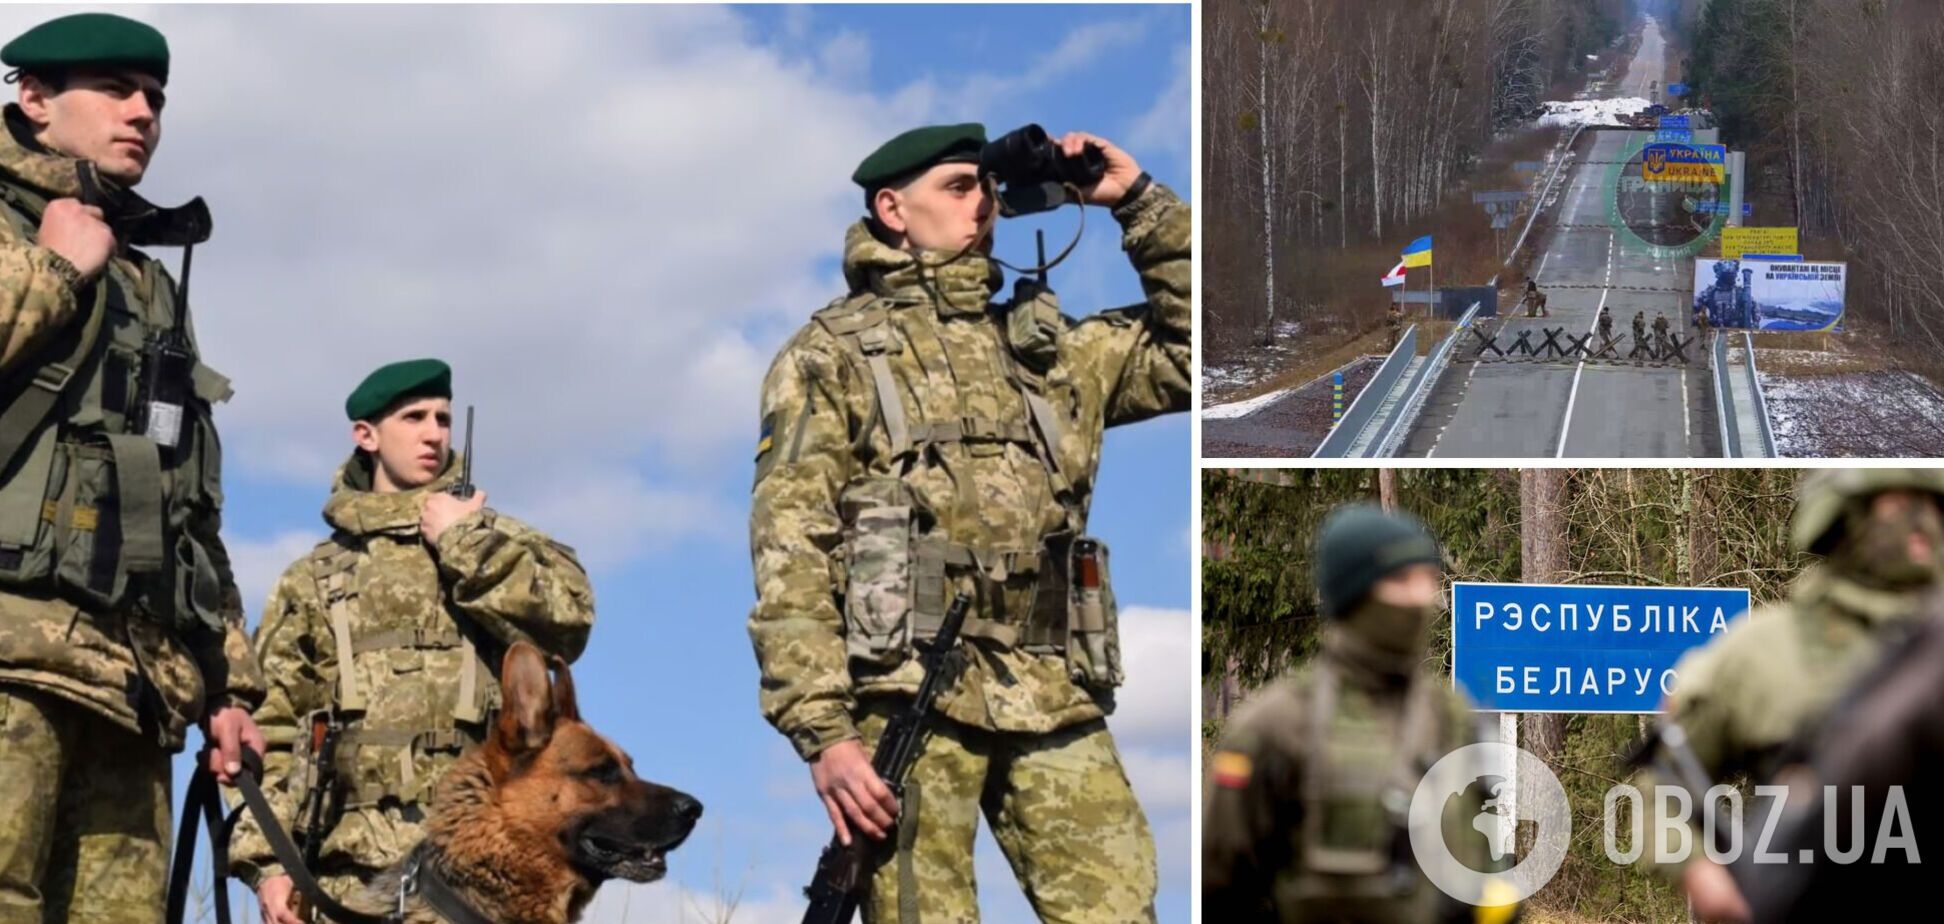 Не только 'Валера': украинские пограничники устроили троллинг высшего уровня беларуским коллегам. Видео